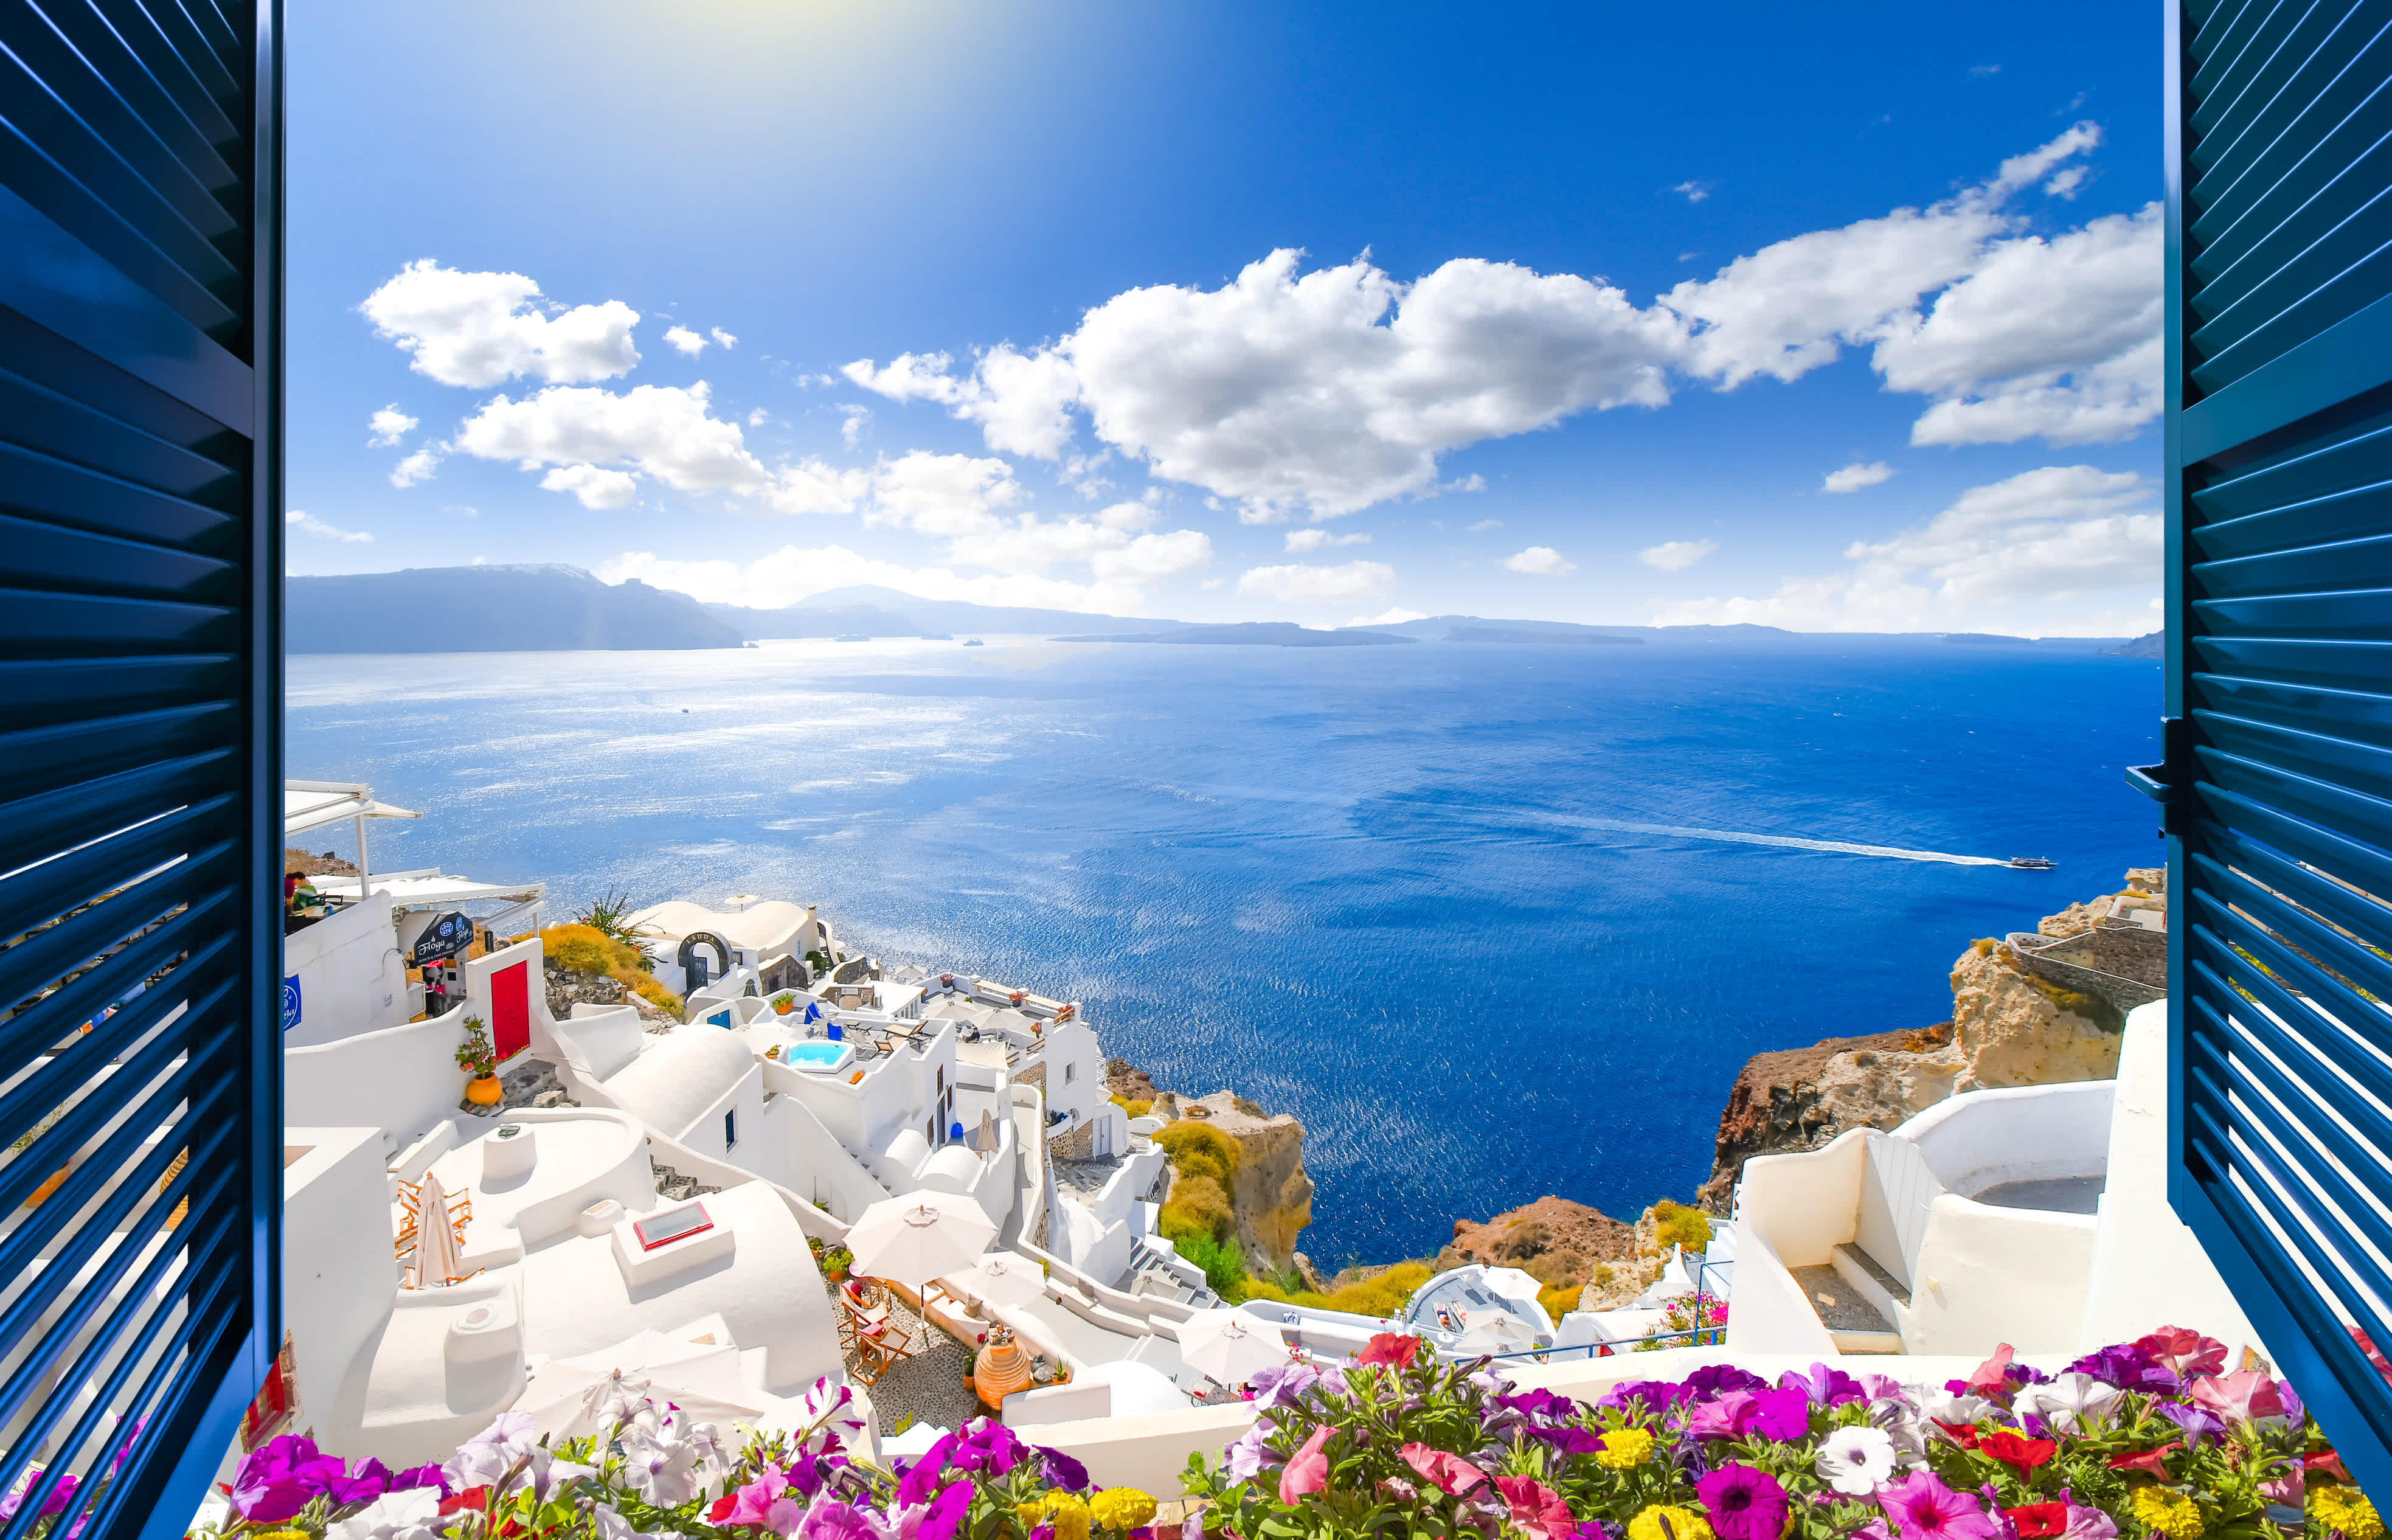 Vue à travers une fenêtre ouverte avec des volets bleus sur le village blanc d'Oia, qui se dresse au-dessus du bleu de la mer Égée sur l'île de Santorin, en Grèce.